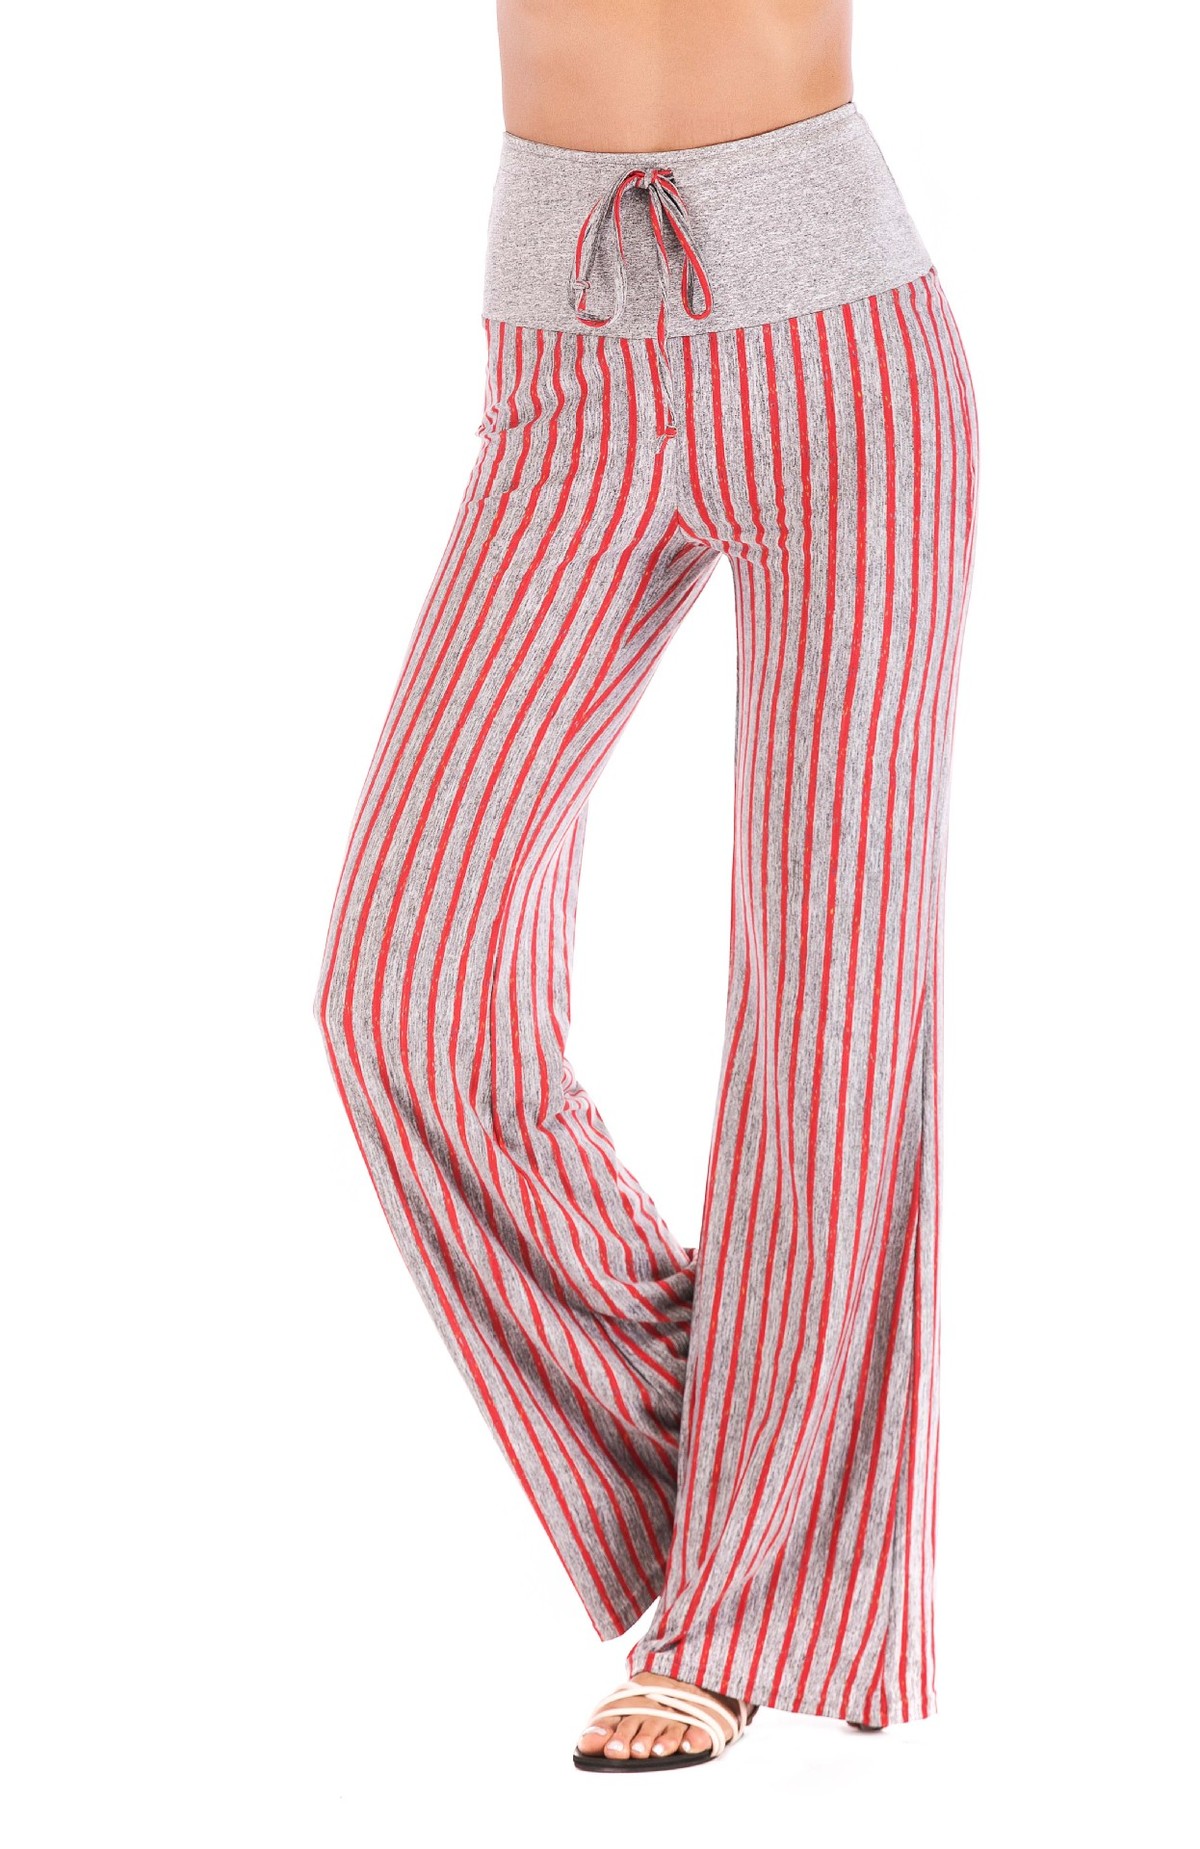 pantalon-de-yoga-pour-femme-woogalf-Stripe-Imprimer-Yoga-Pantalon-L-che-Pantalon-Large-de-Jambe-Compl-te-Haute-Taille-Courir